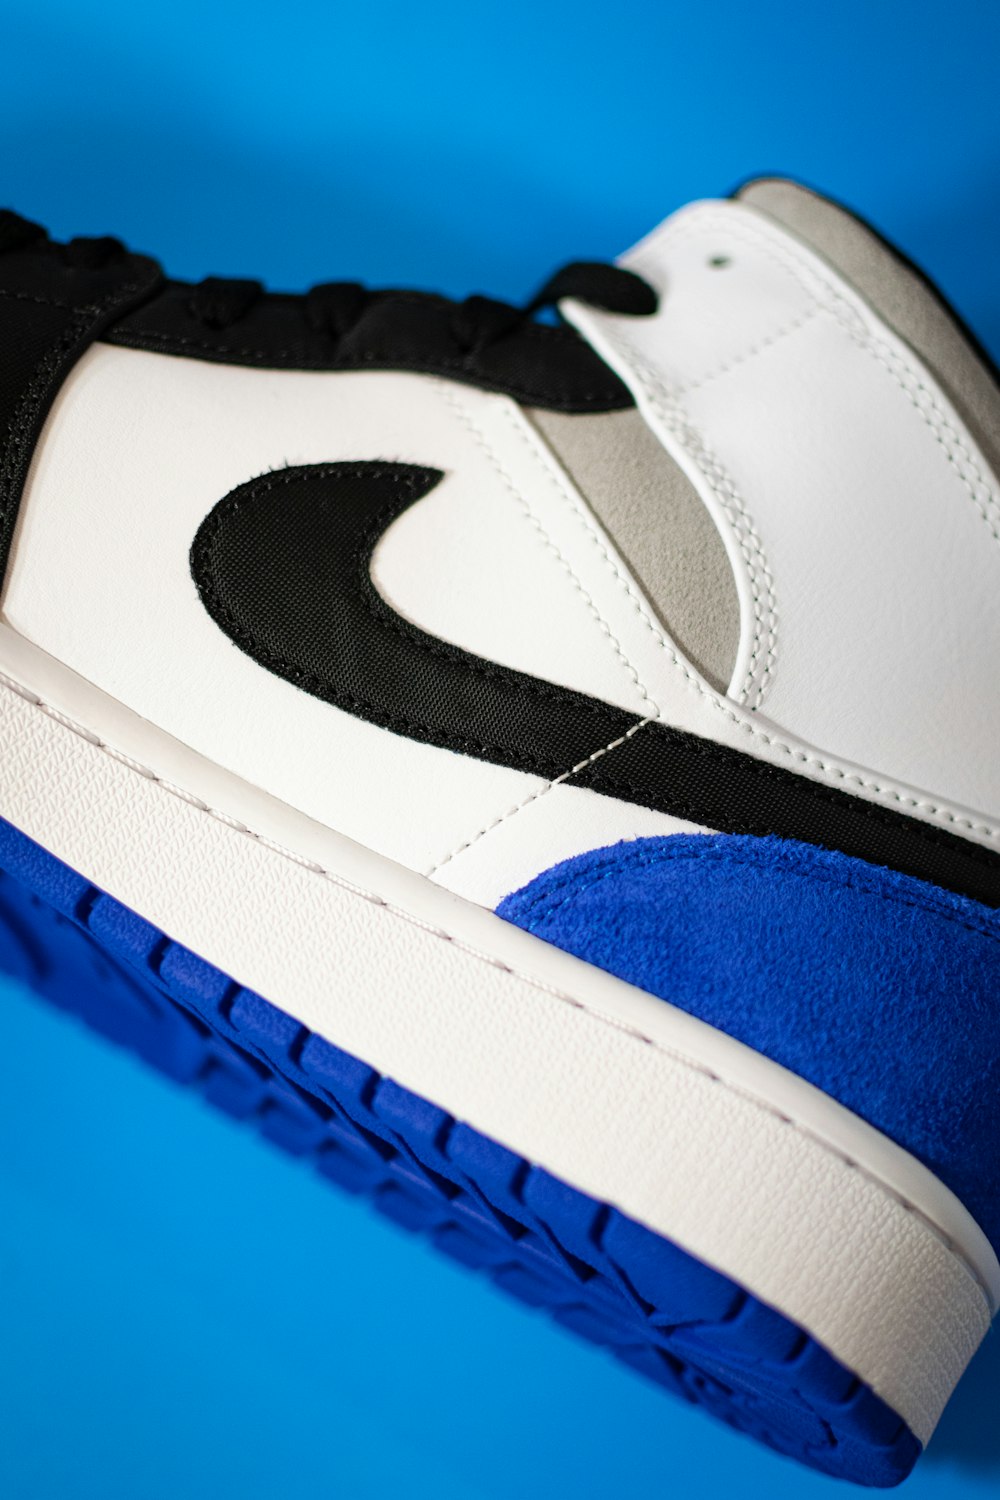 blau-weißer und schwarzer Nike-Schuh